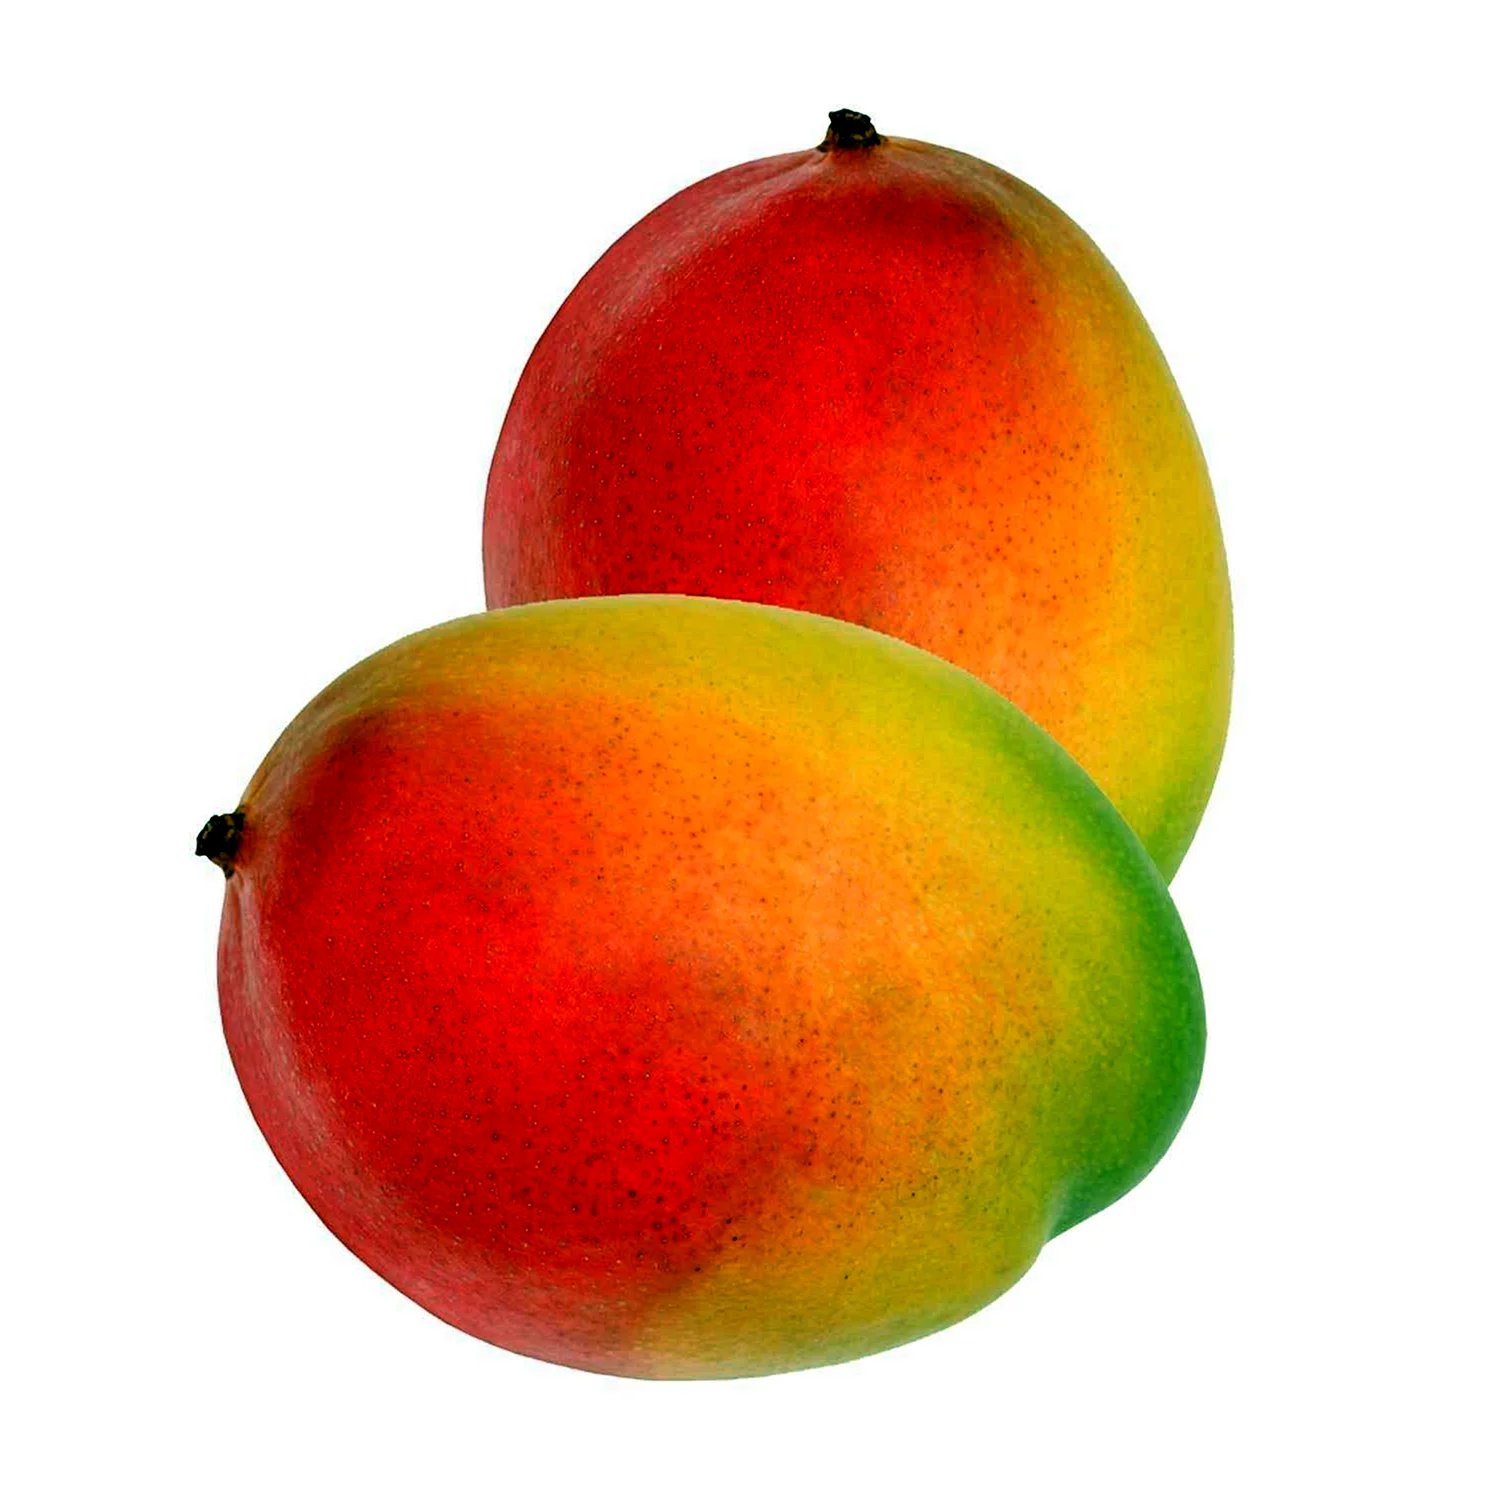 Цвет спелого манго